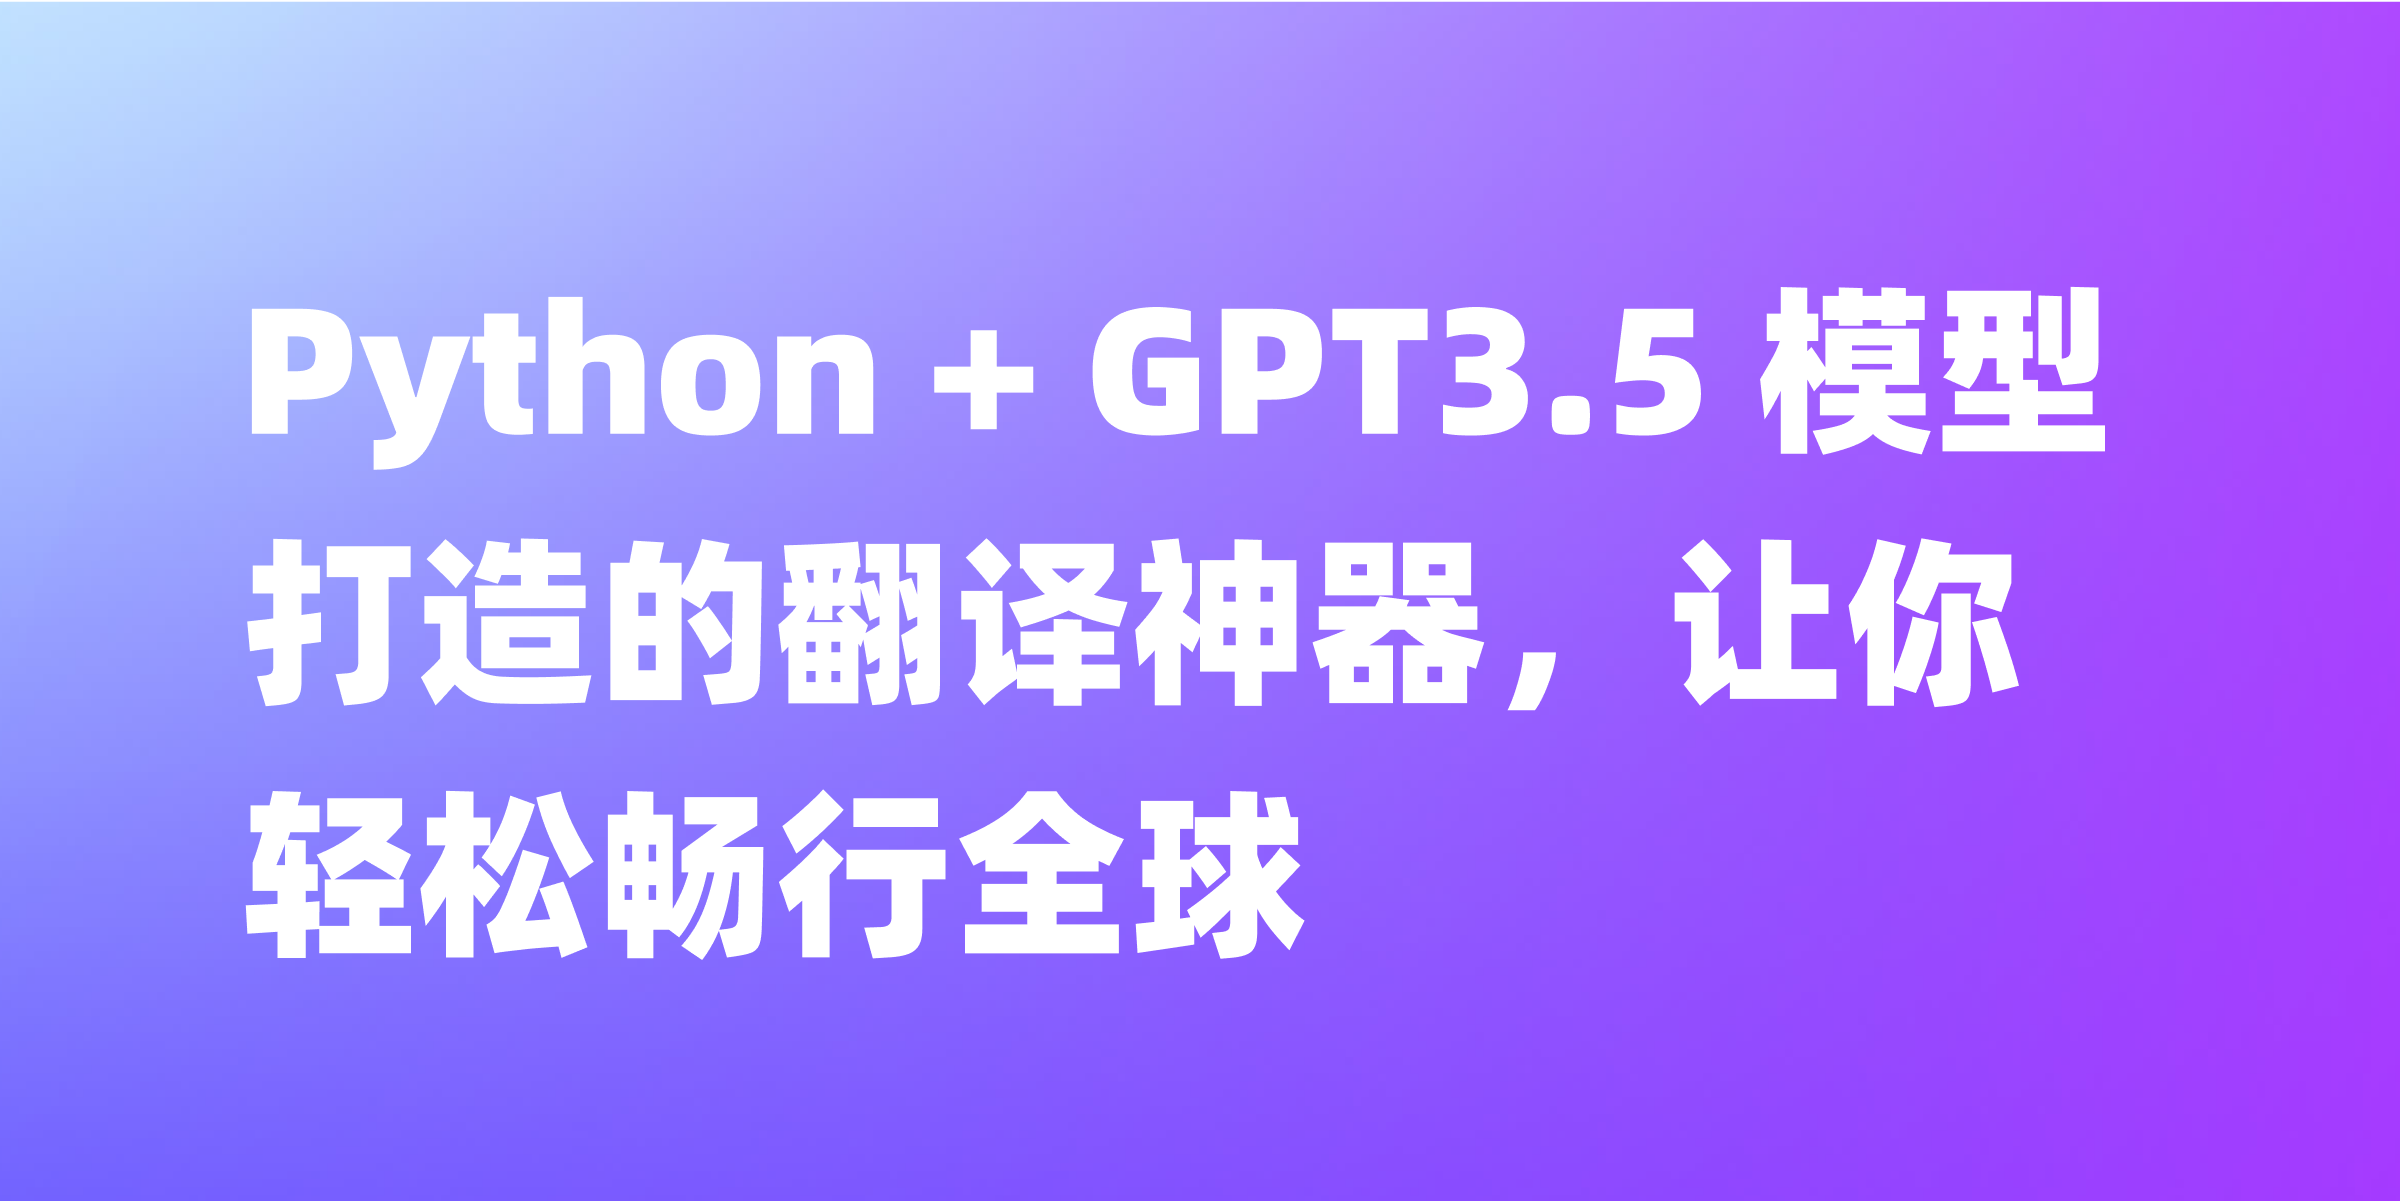 使用 Python + GPT3.5 模型写一个翻译脚本，嘎嘎好用